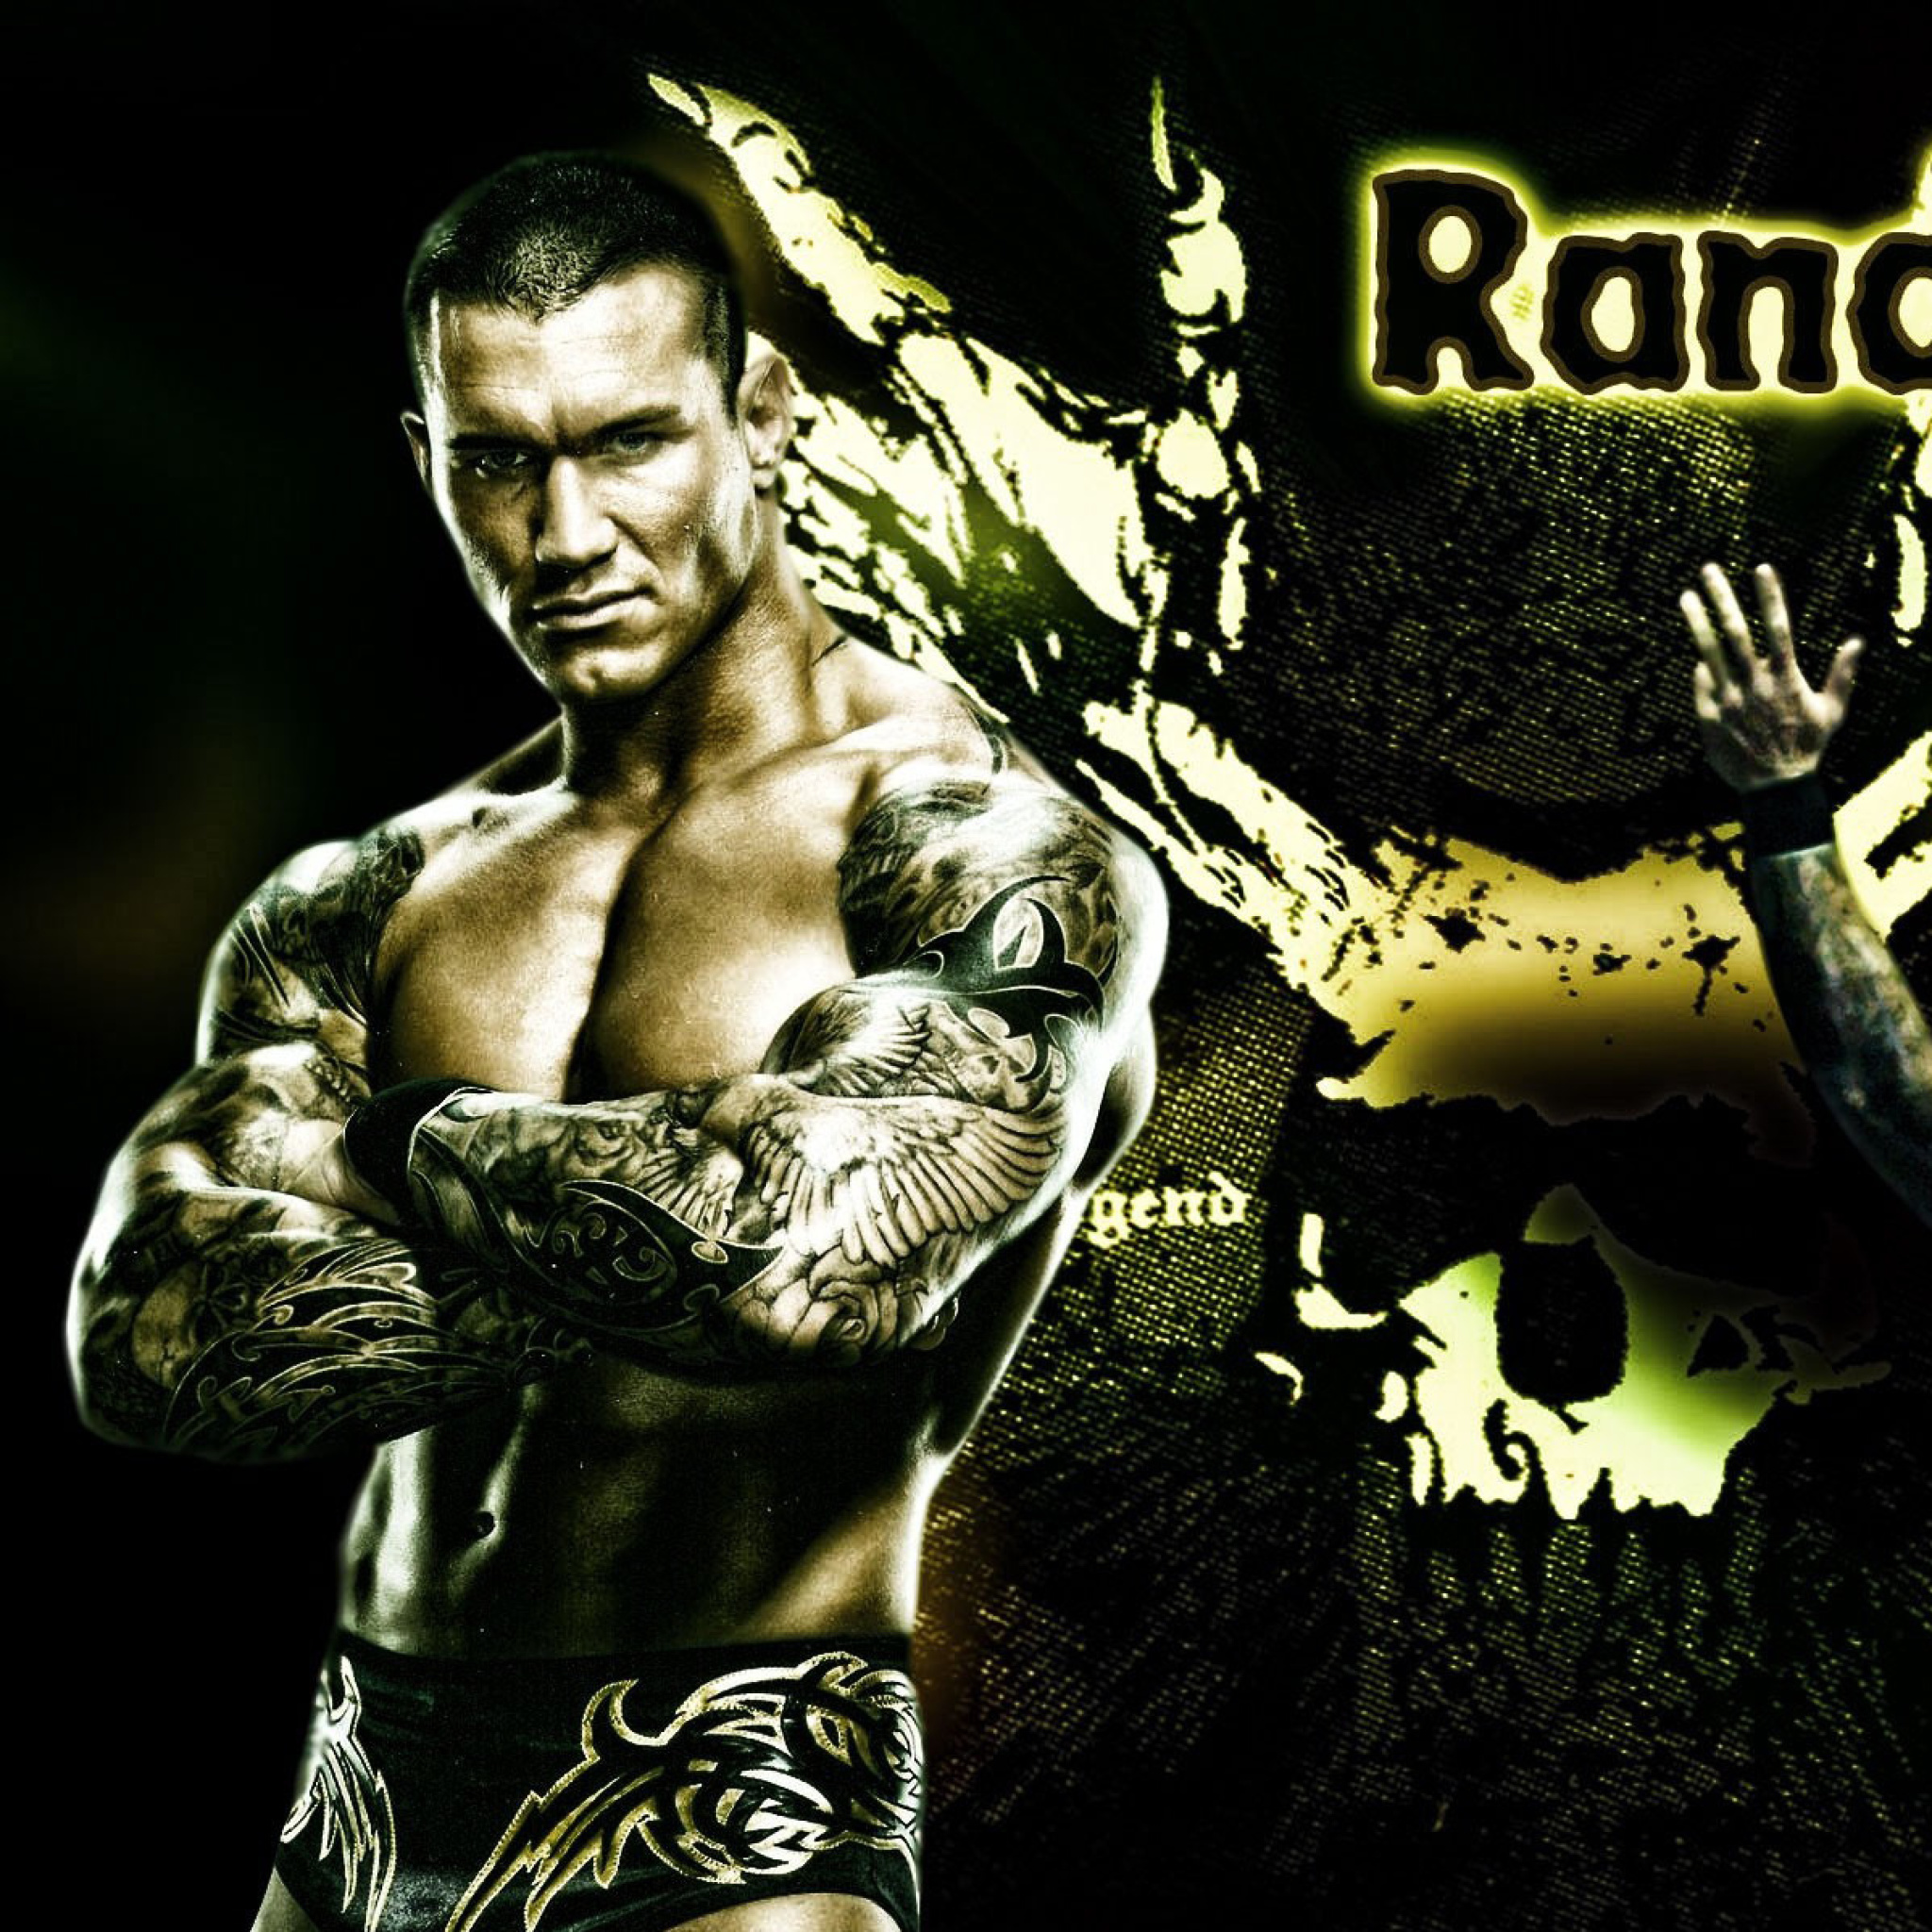 Das Randy Orton Wrestler Wallpaper 2048x2048